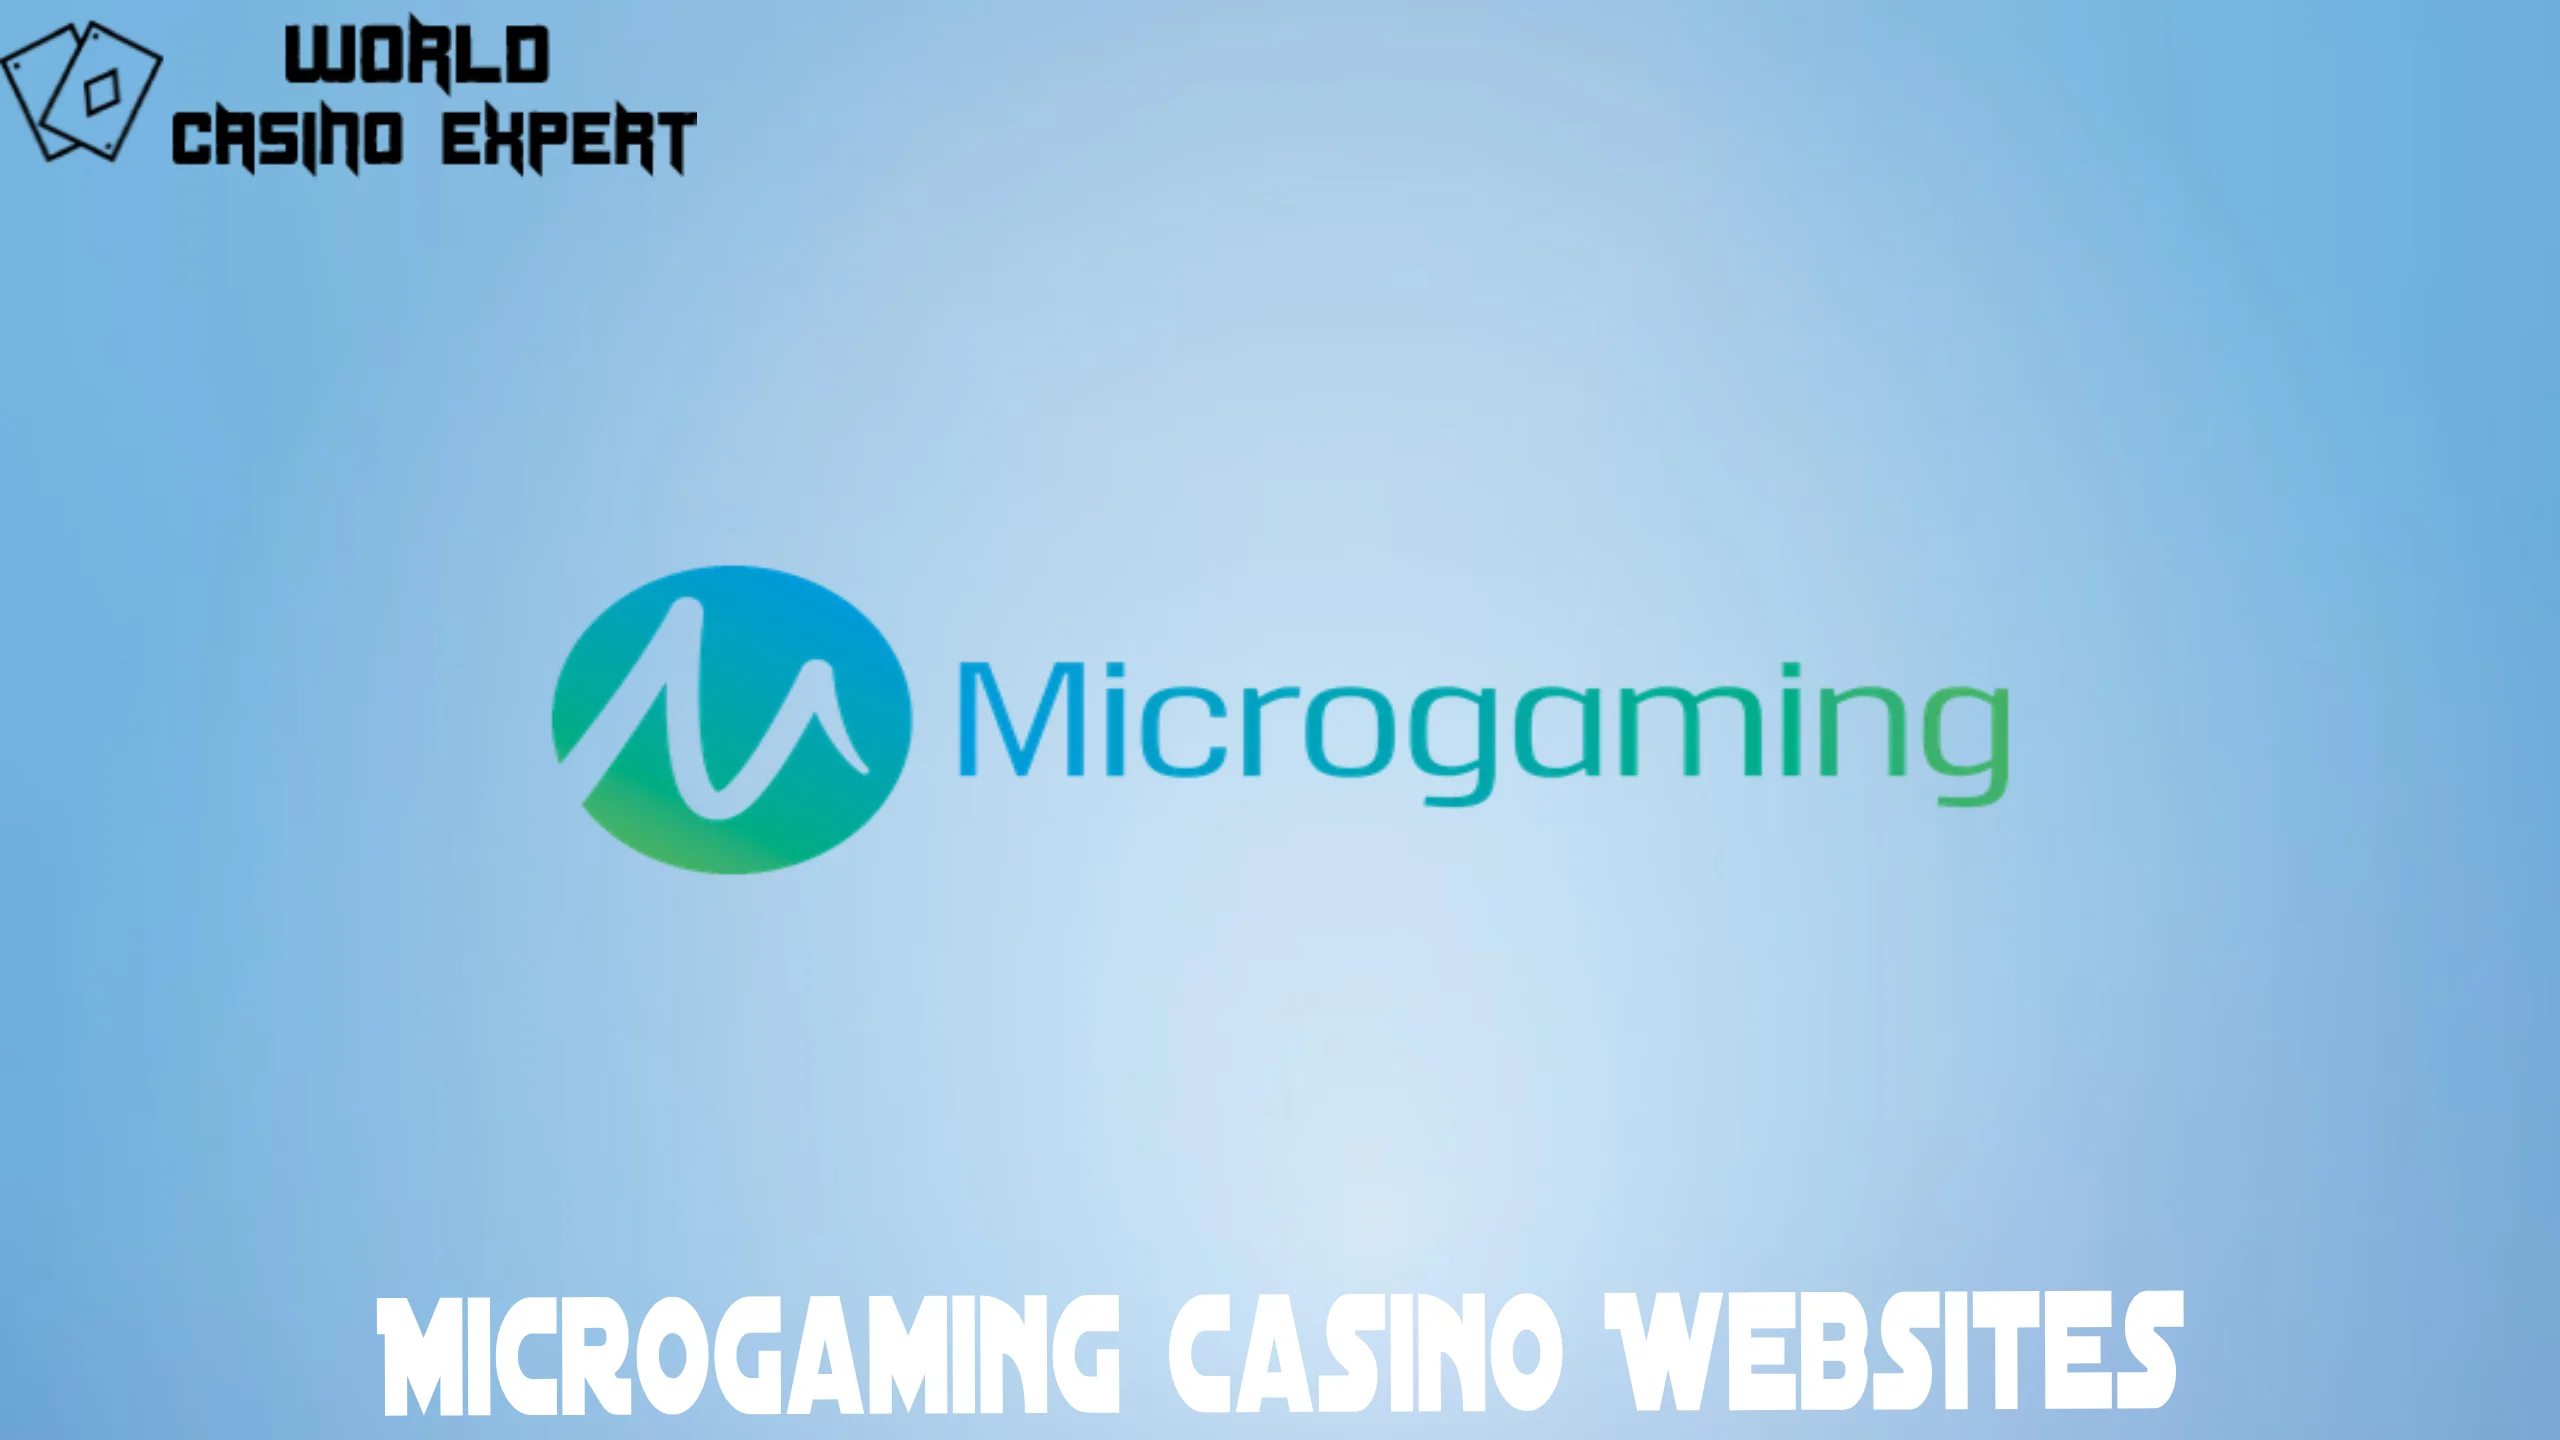 Microgaming Casino Websites | de.worldcasinoexpert.com